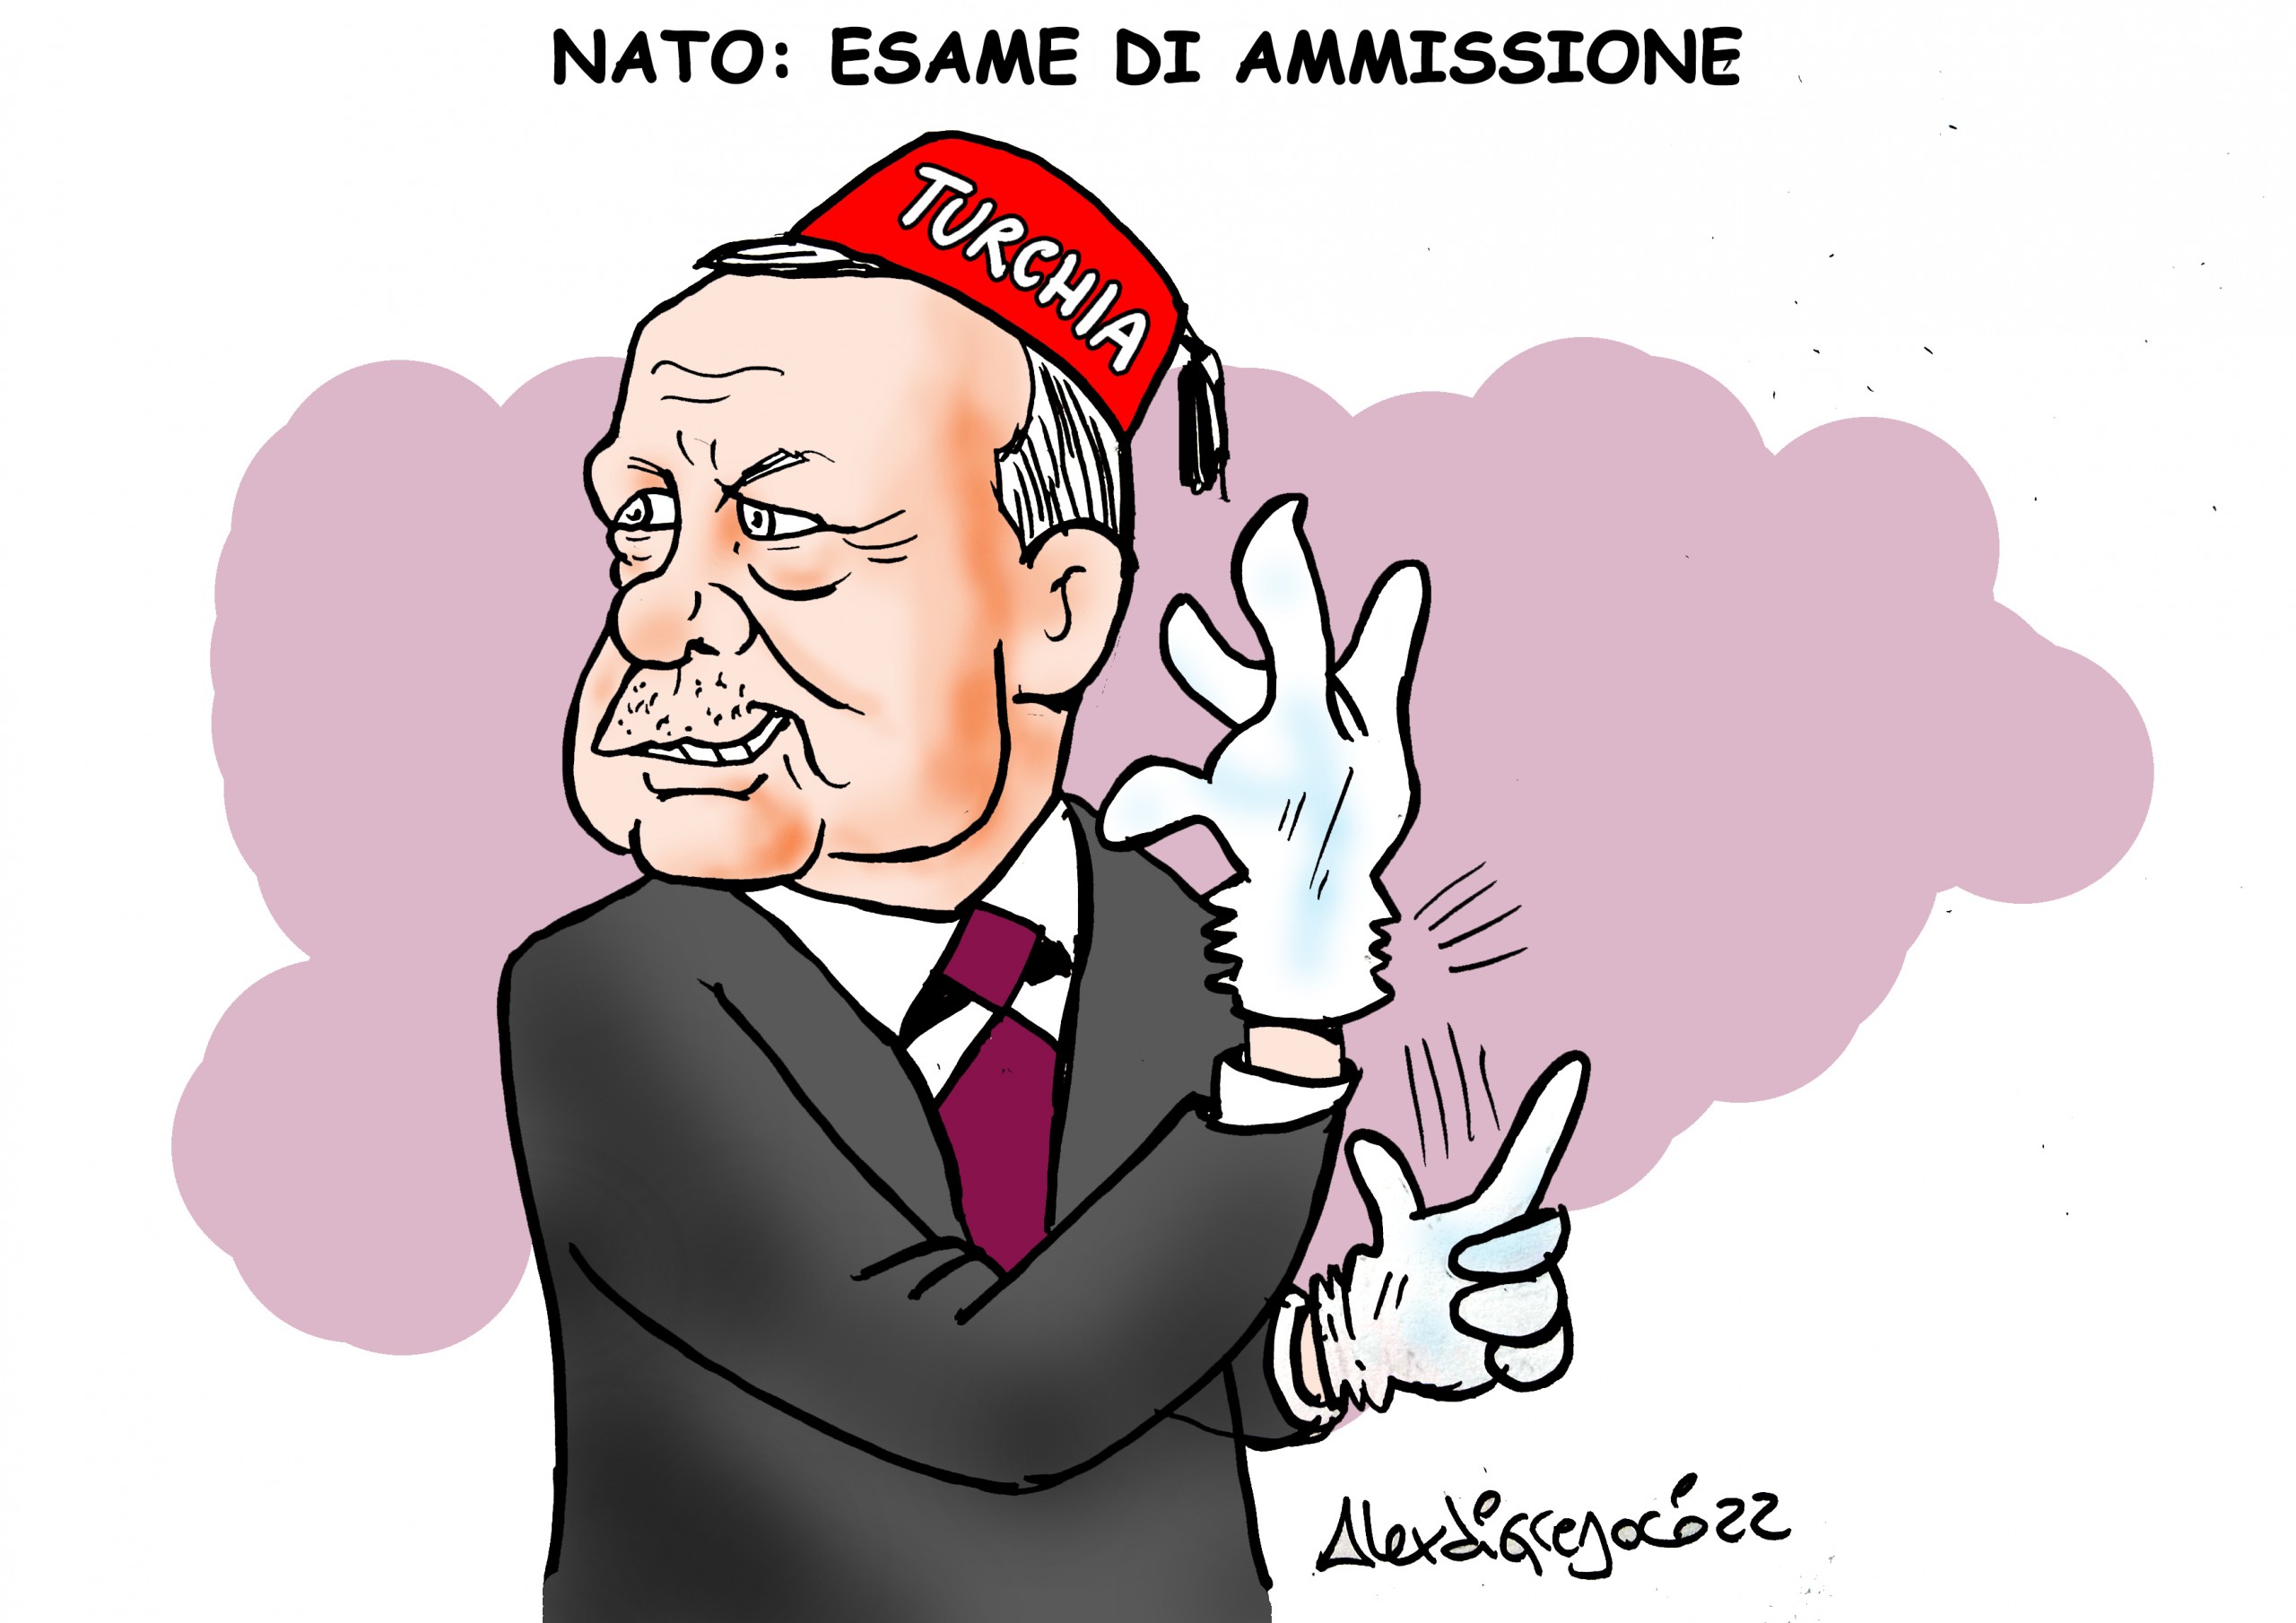 NATO: esame di ammissione